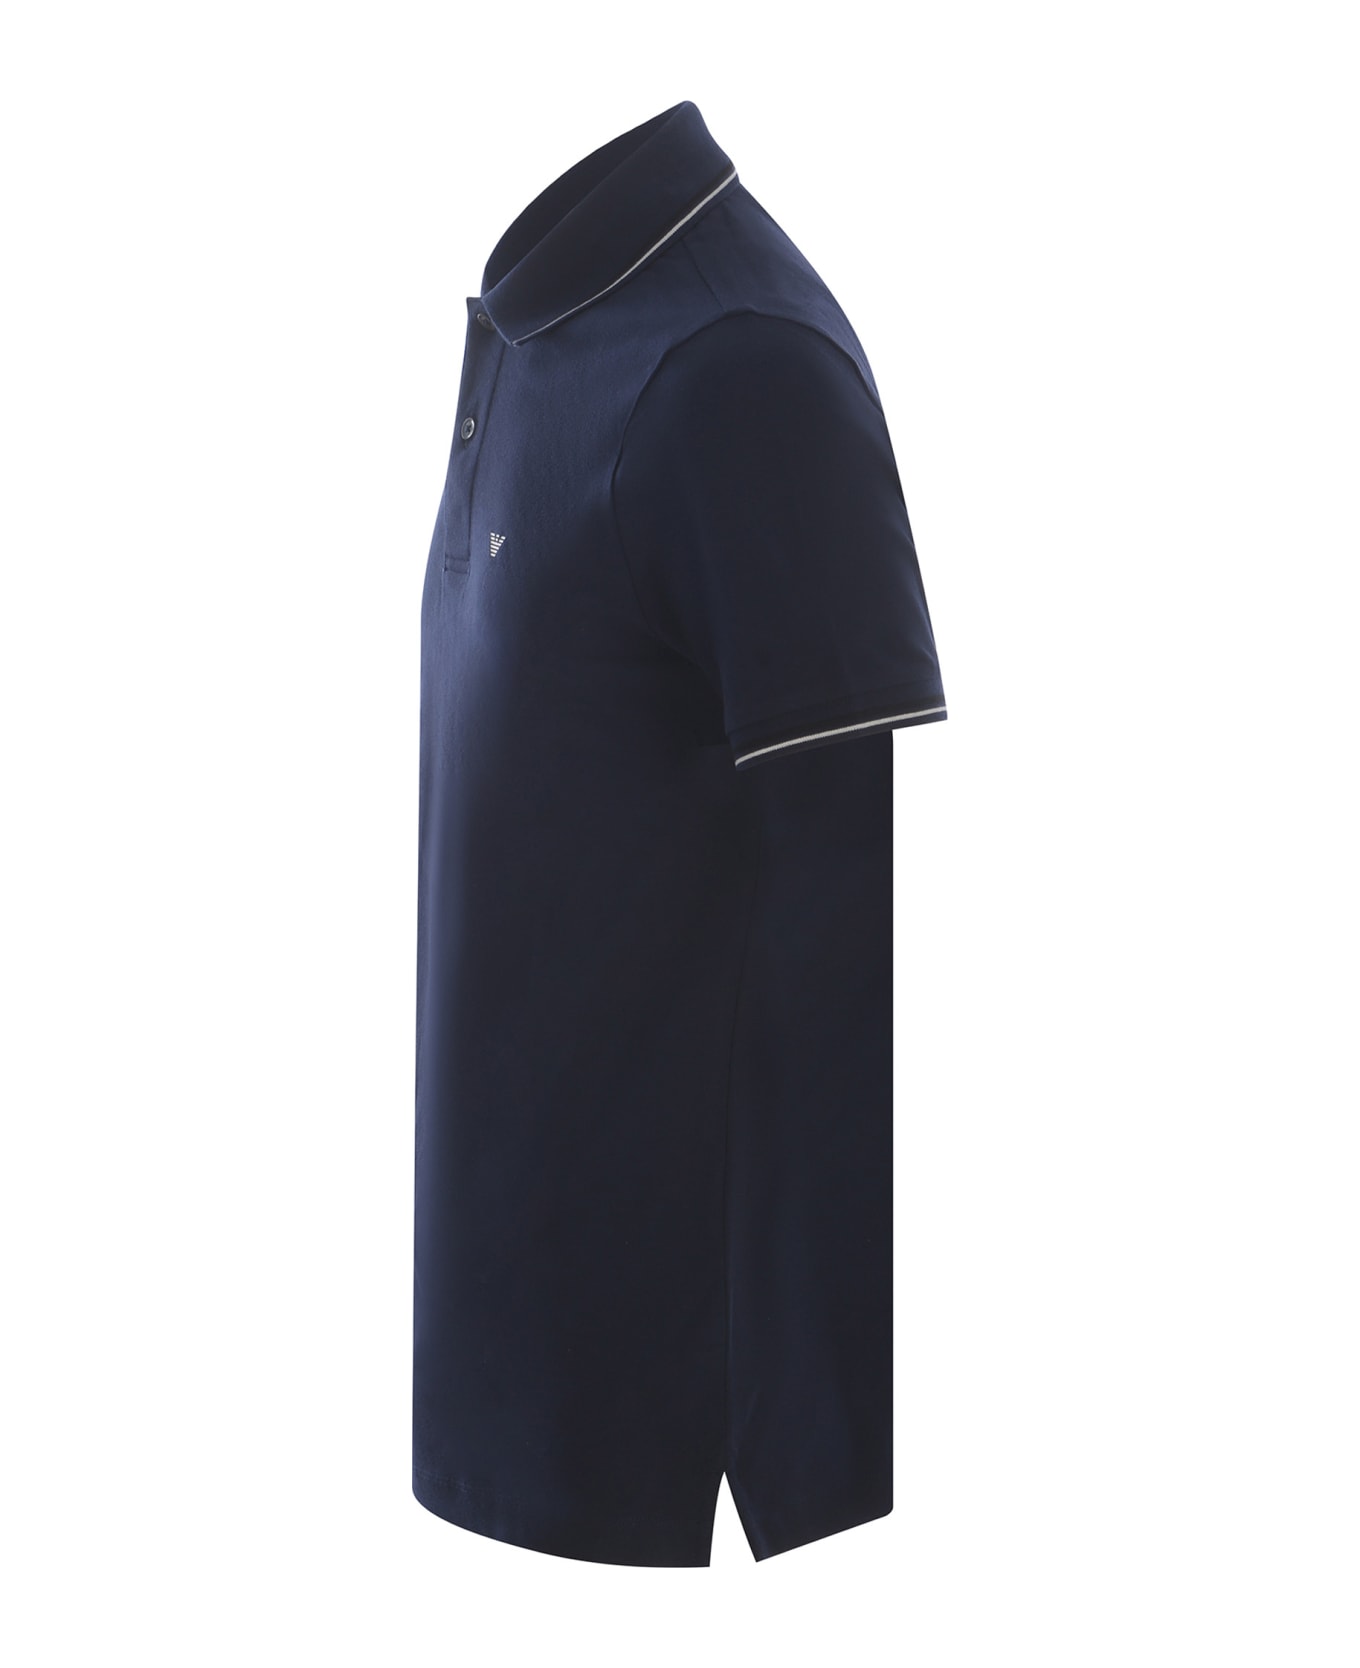 Emporio Armani Polo Shirt Emporio Armani Made Of Stretch Piquet - Blu